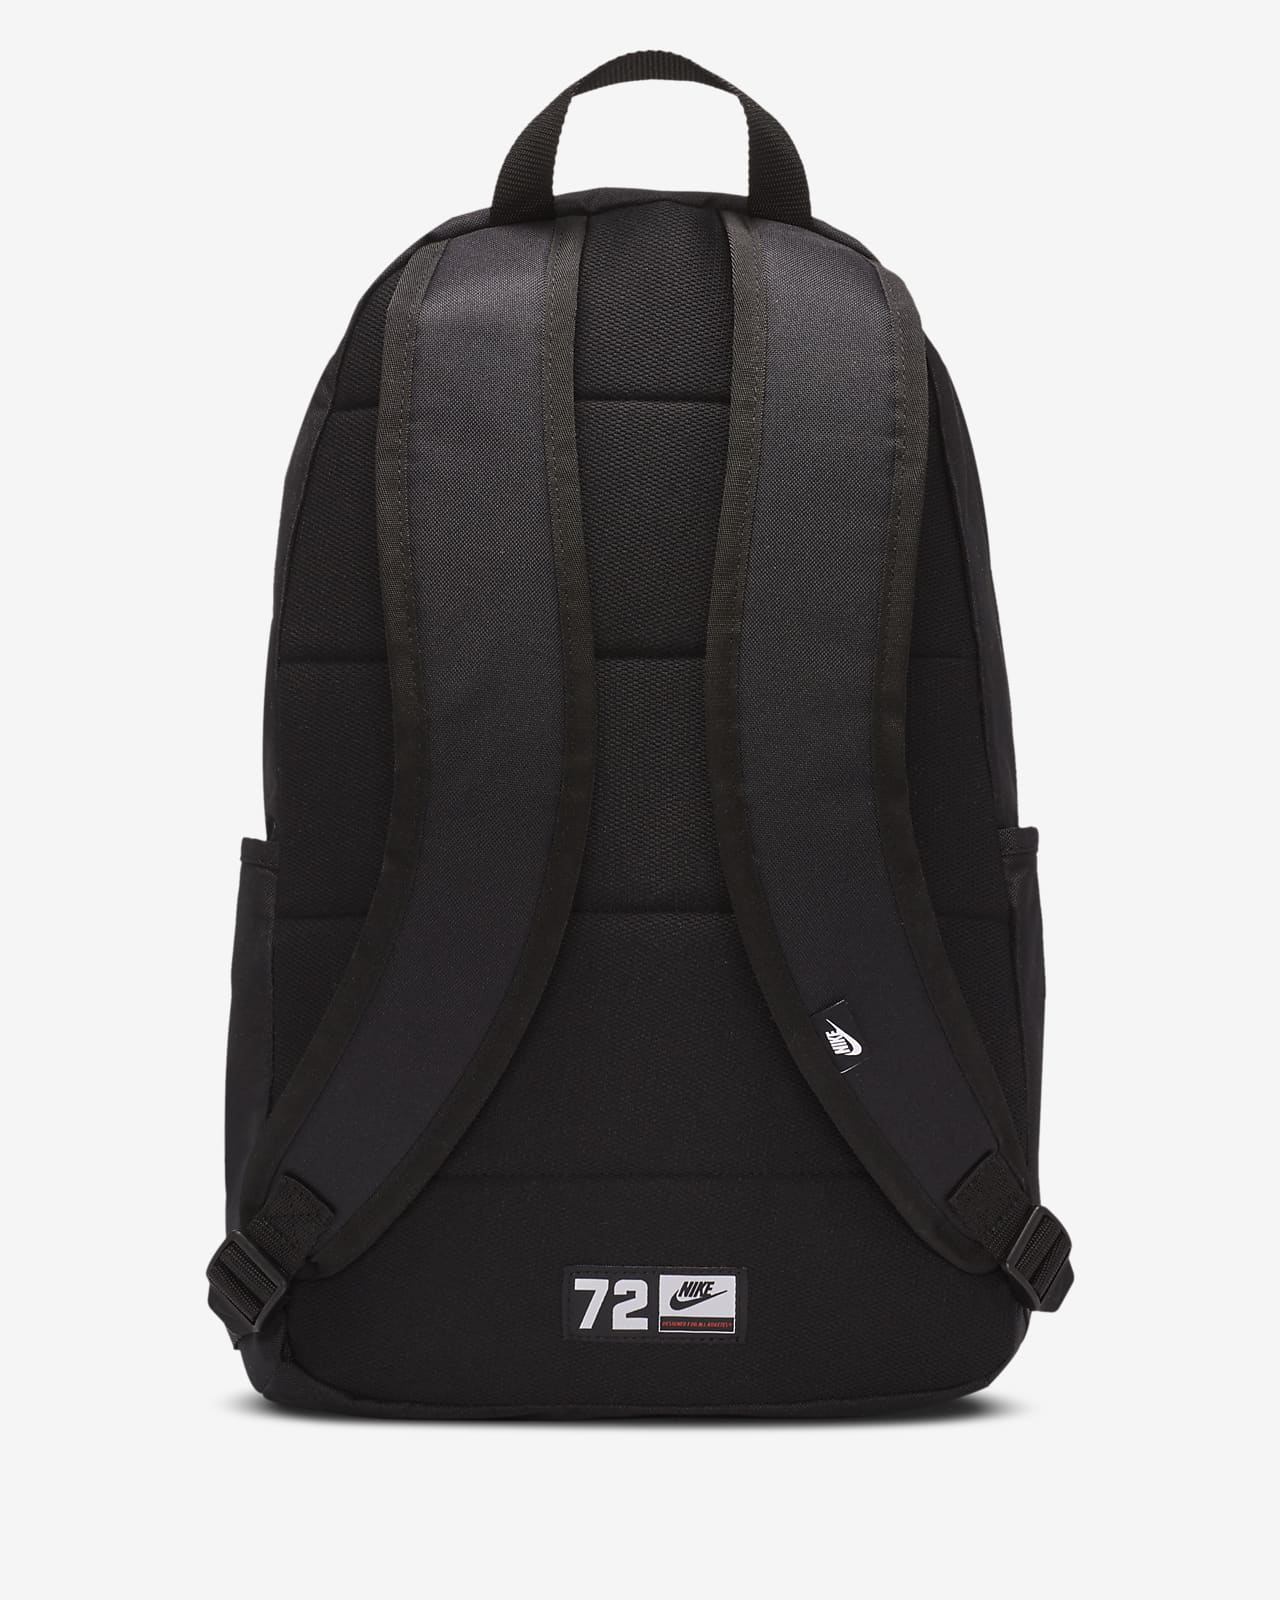 72 nike backpack